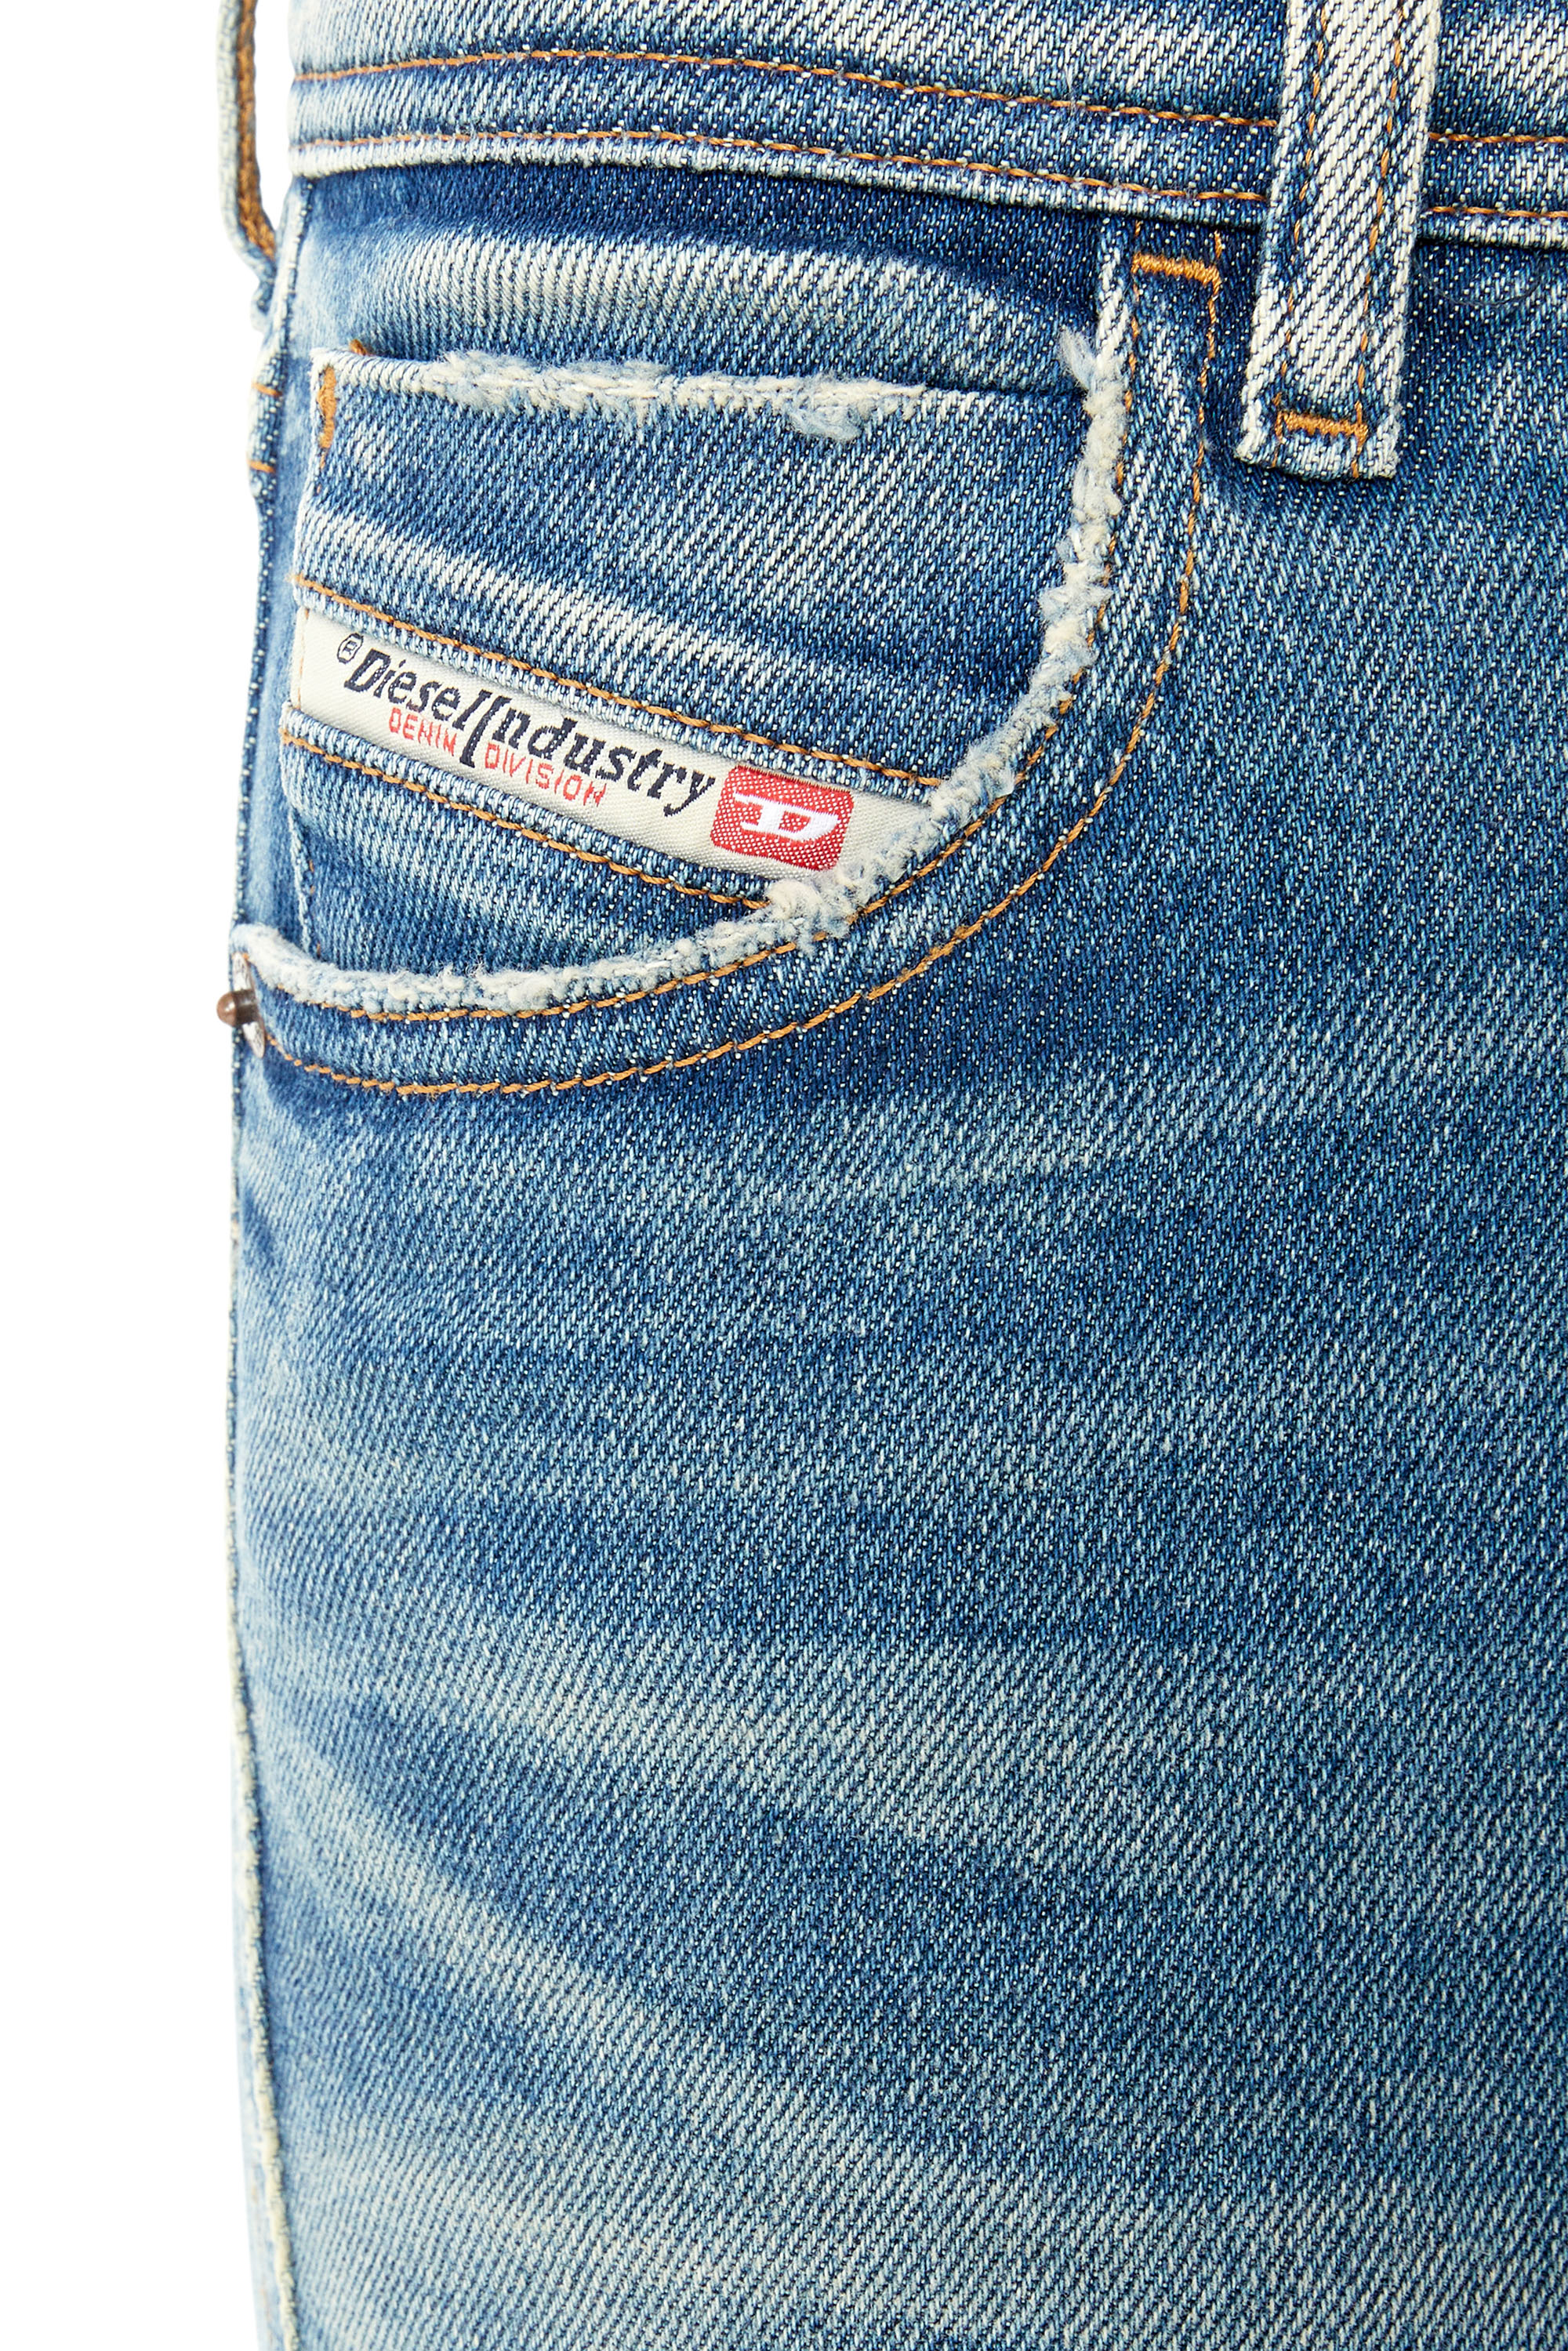 Diesel - Skinny Jeans 2015 Babhila 09E88,  - Image 5